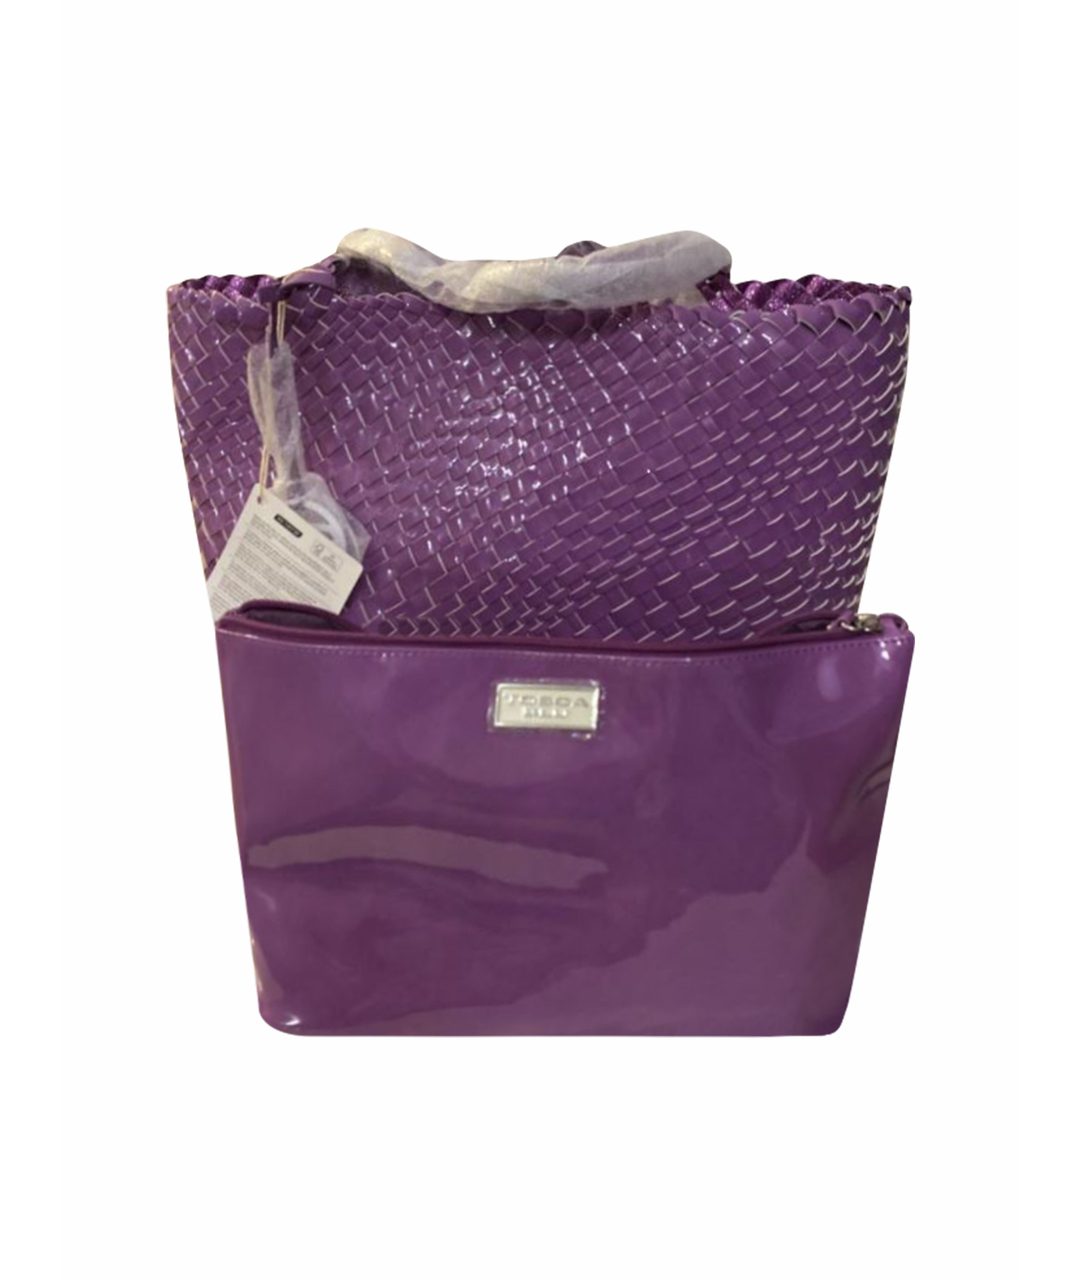 TOSCA BLU Фиолетовая пляжная сумка из лакированной кожи, фото 1